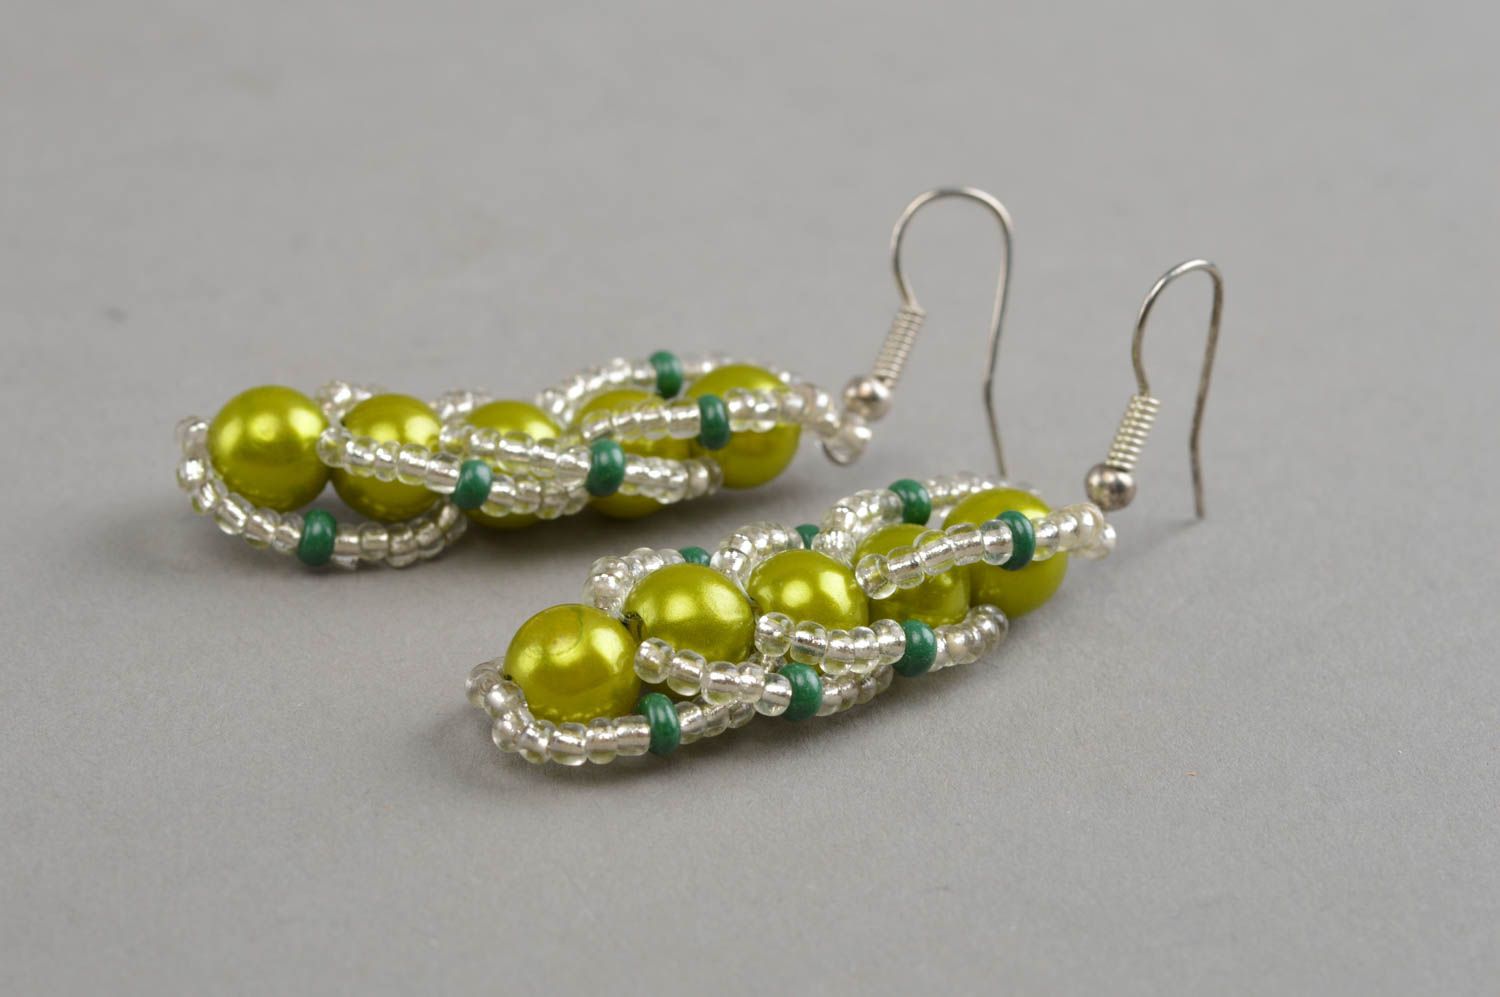 Stylish handmade beaded earrings designer earrings woven of beads gift ideas photo 3